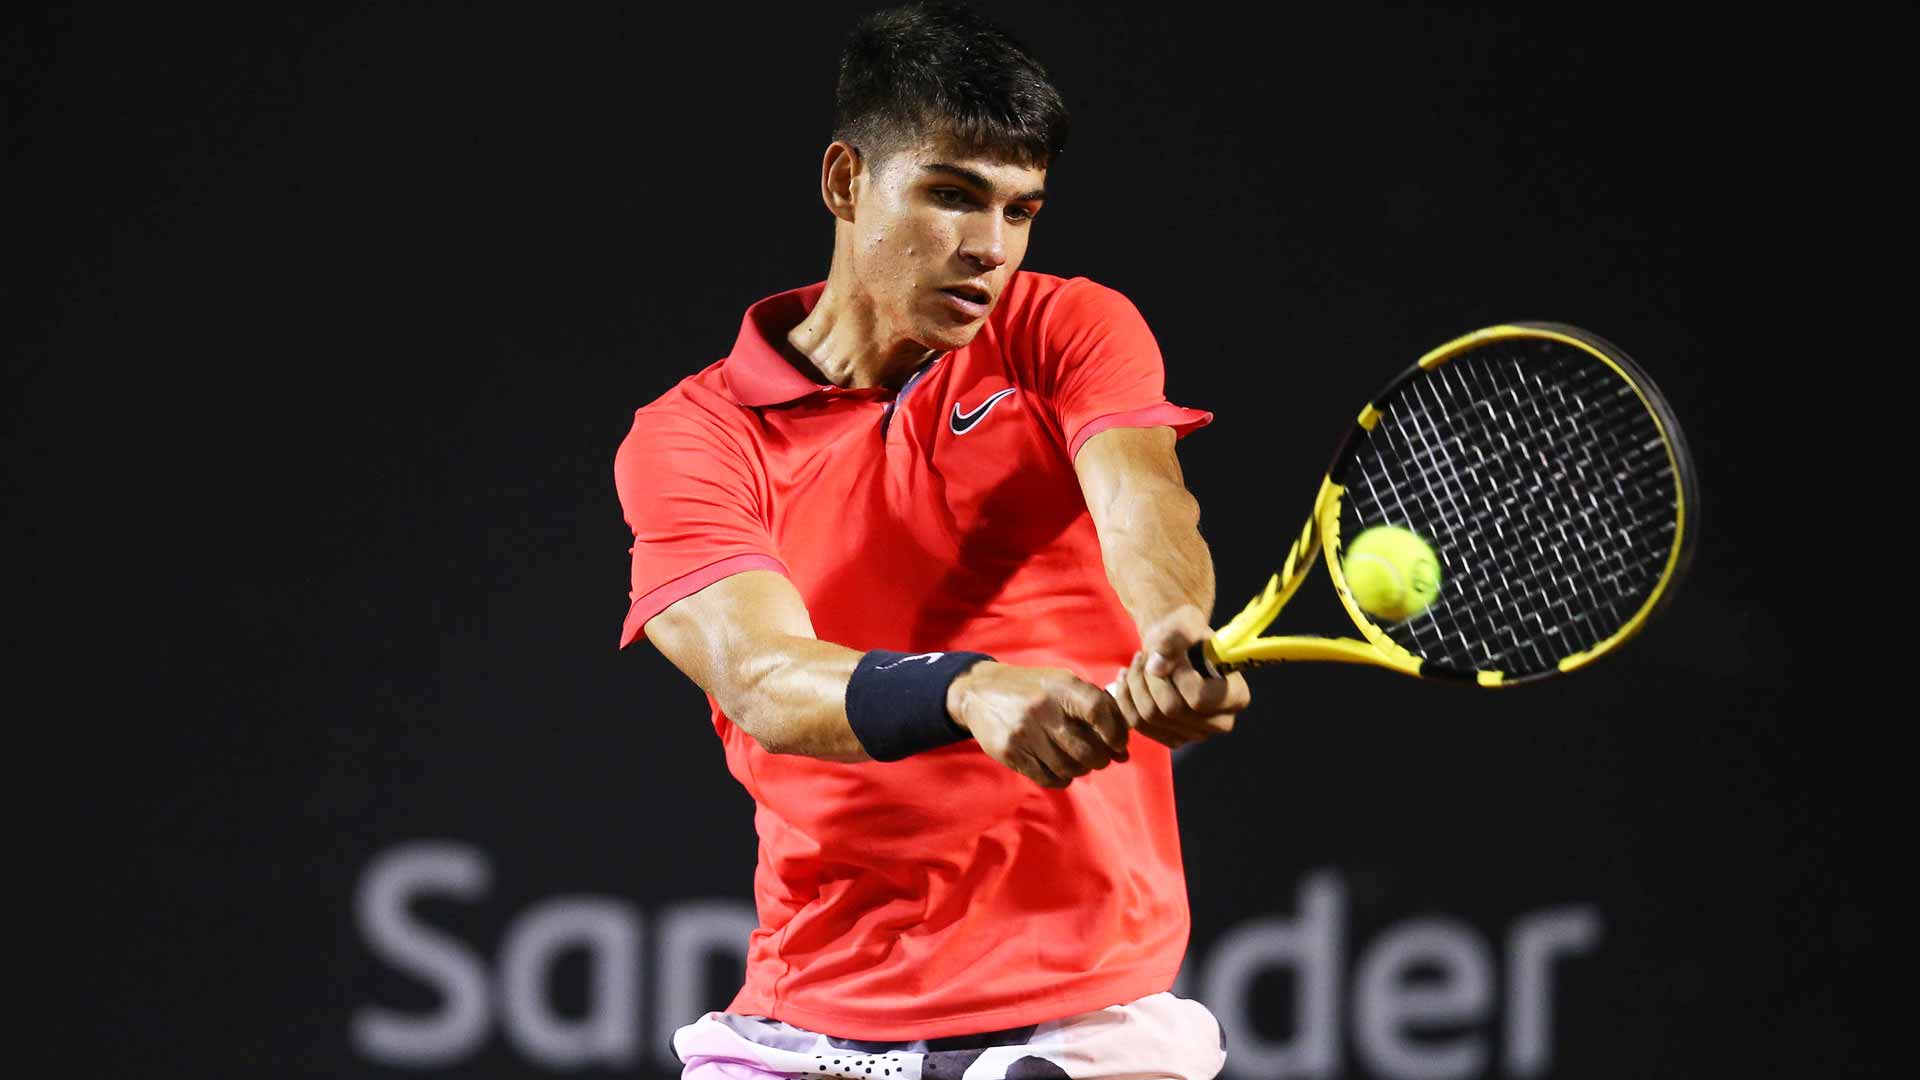 16-годишен испанец дебютира в ATP с победа след над три часа игра